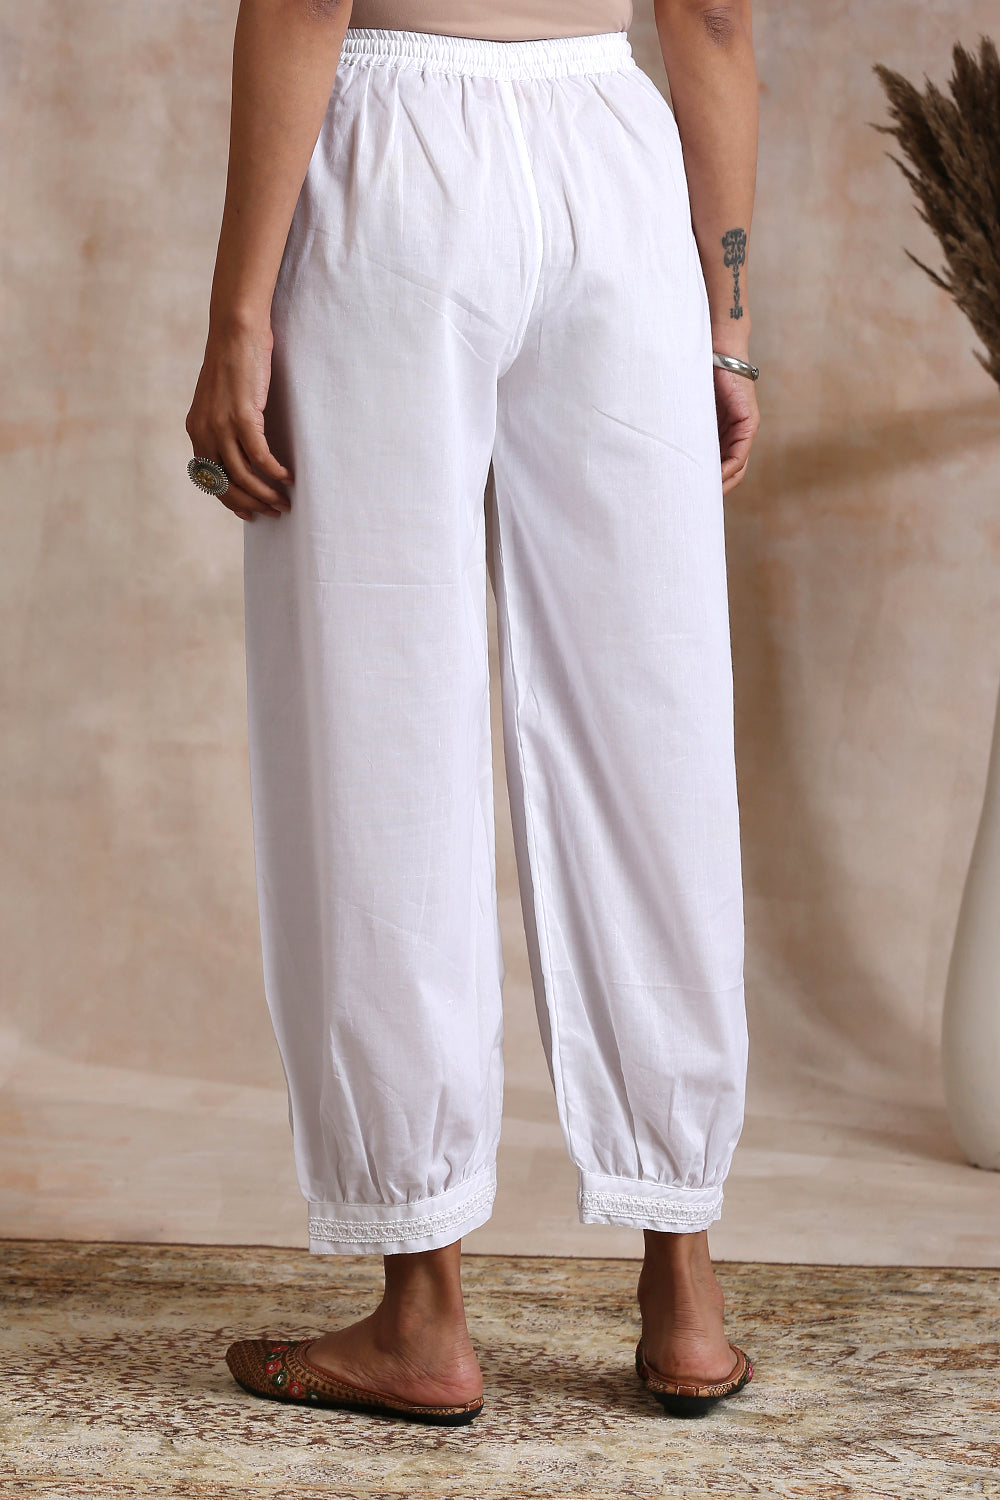 Pants Elastic Cotton Women Summer | White Cotton Pants Elastic Waist -  Women's Cotton - Aliexpress